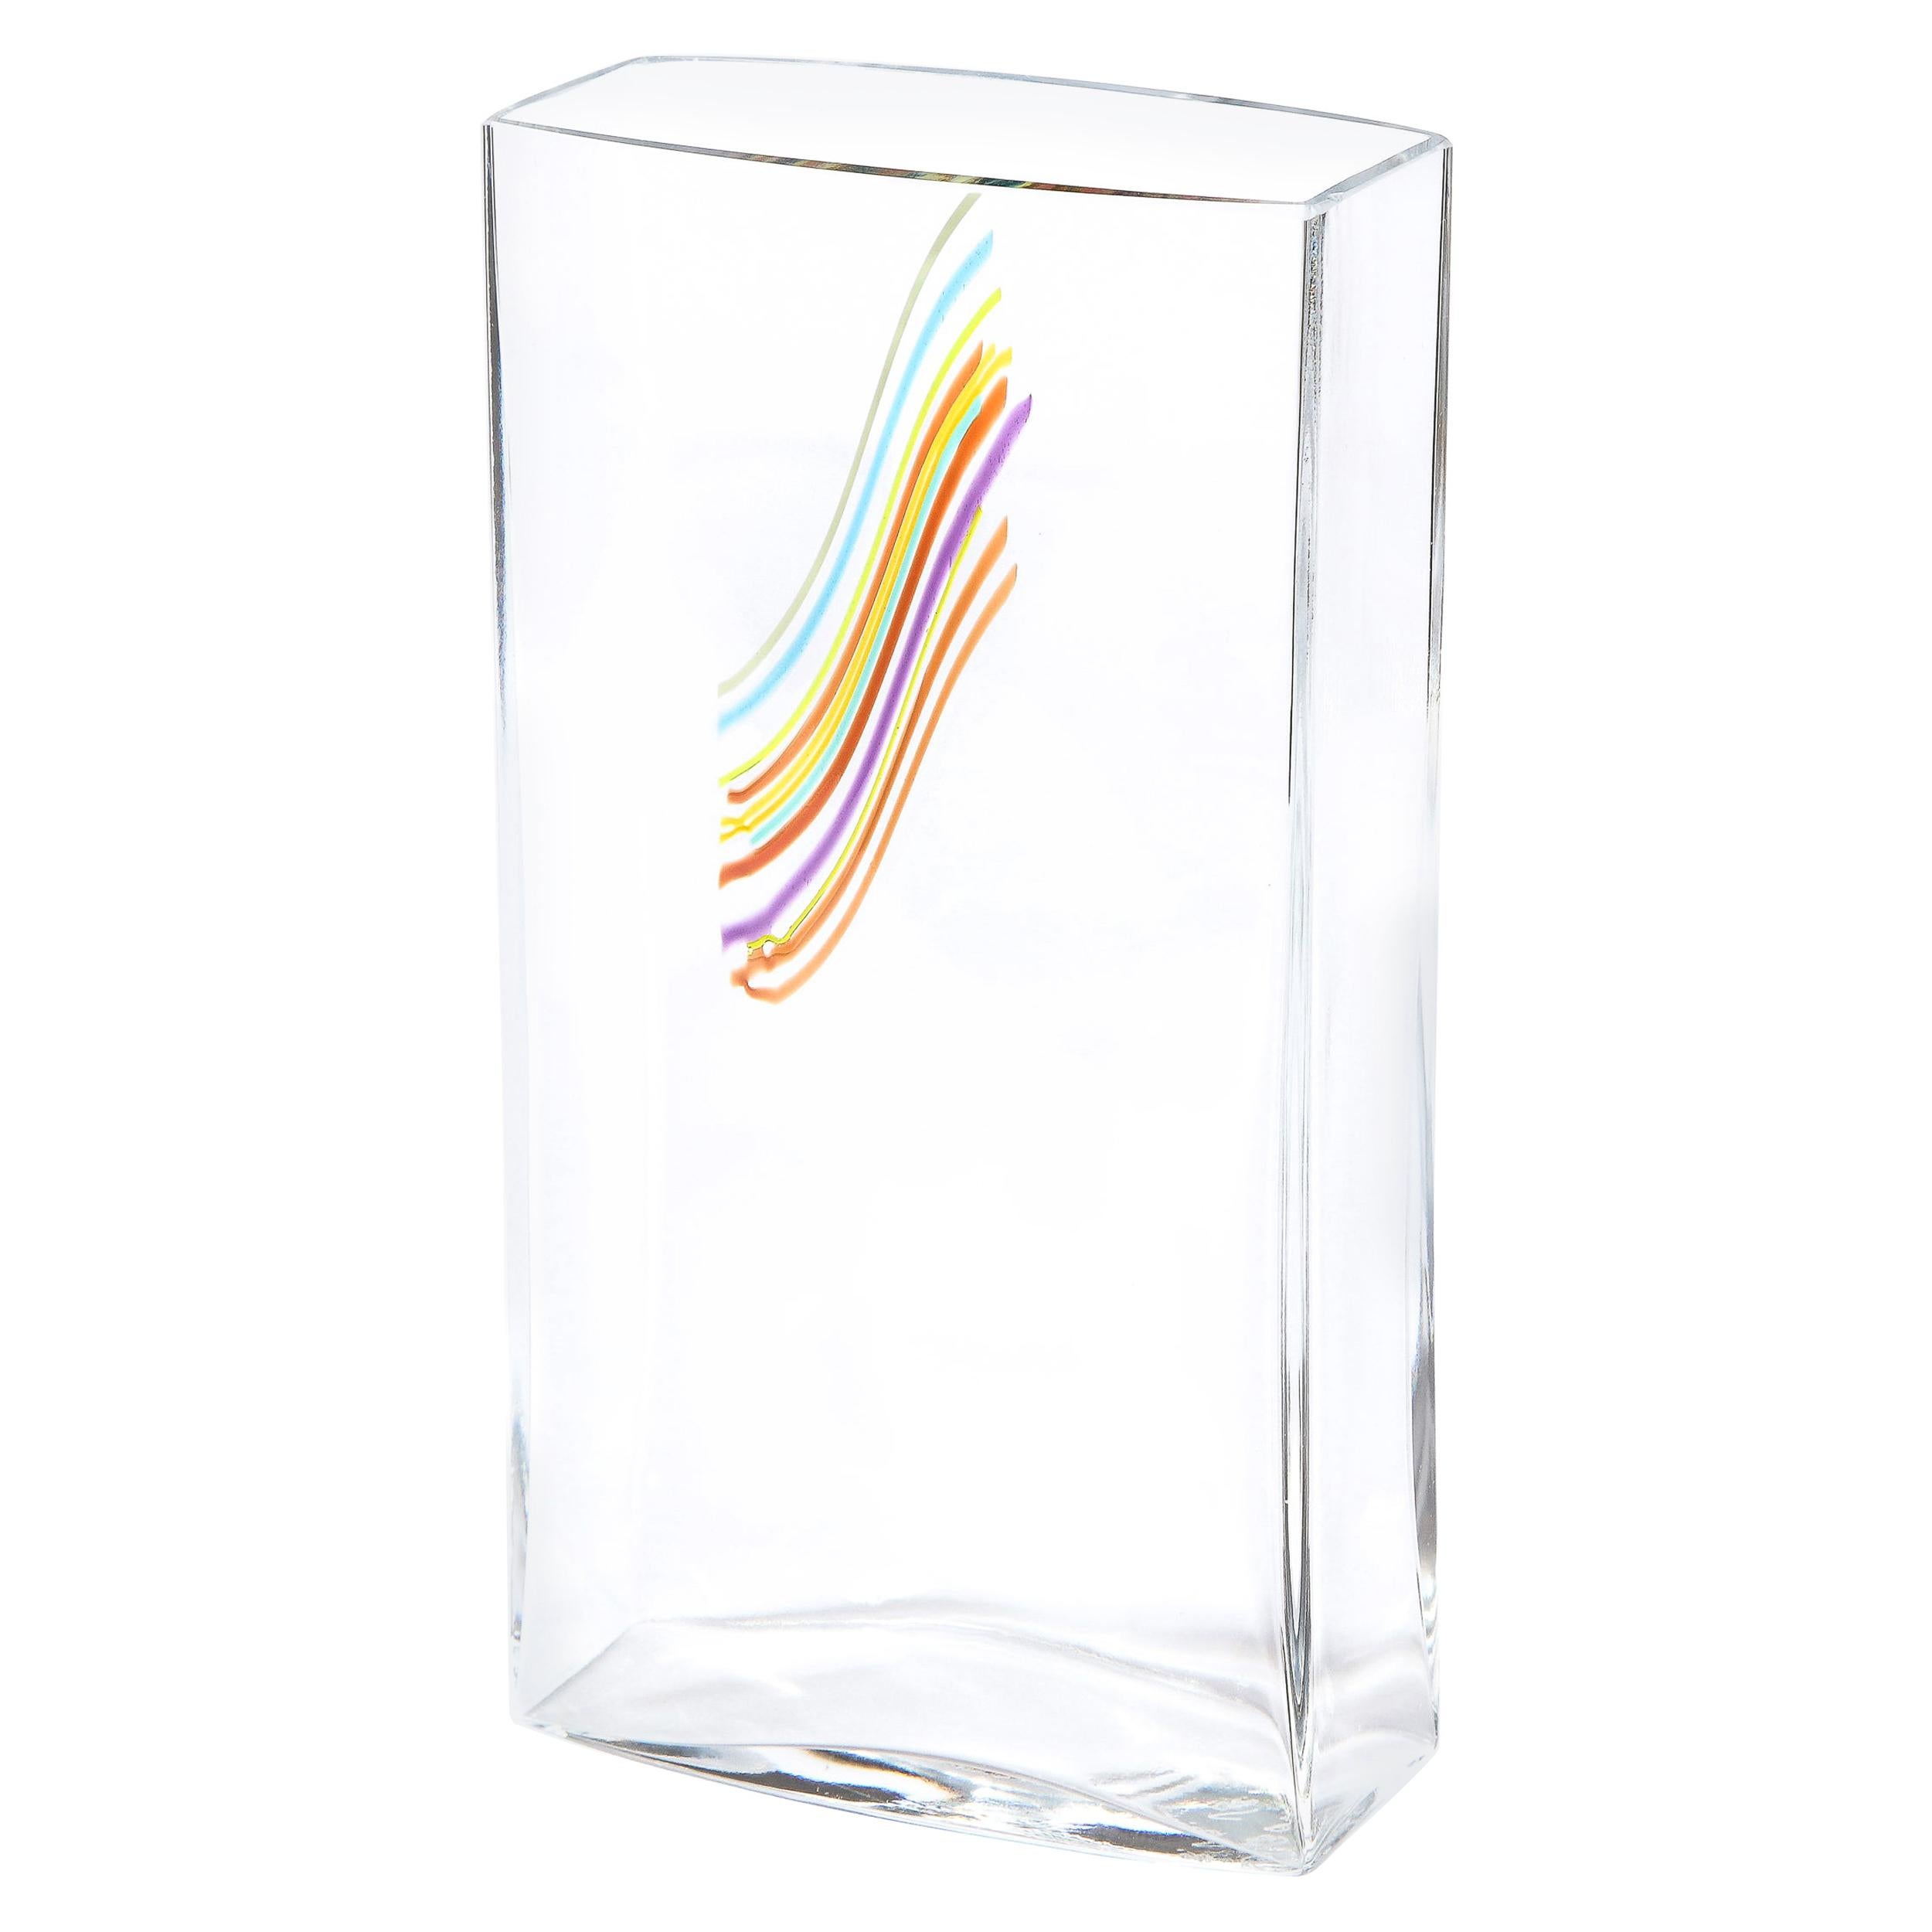 Modernist Rectangular Translucent Glass Vase by Bertil Vallien for Kosta Boda For Sale